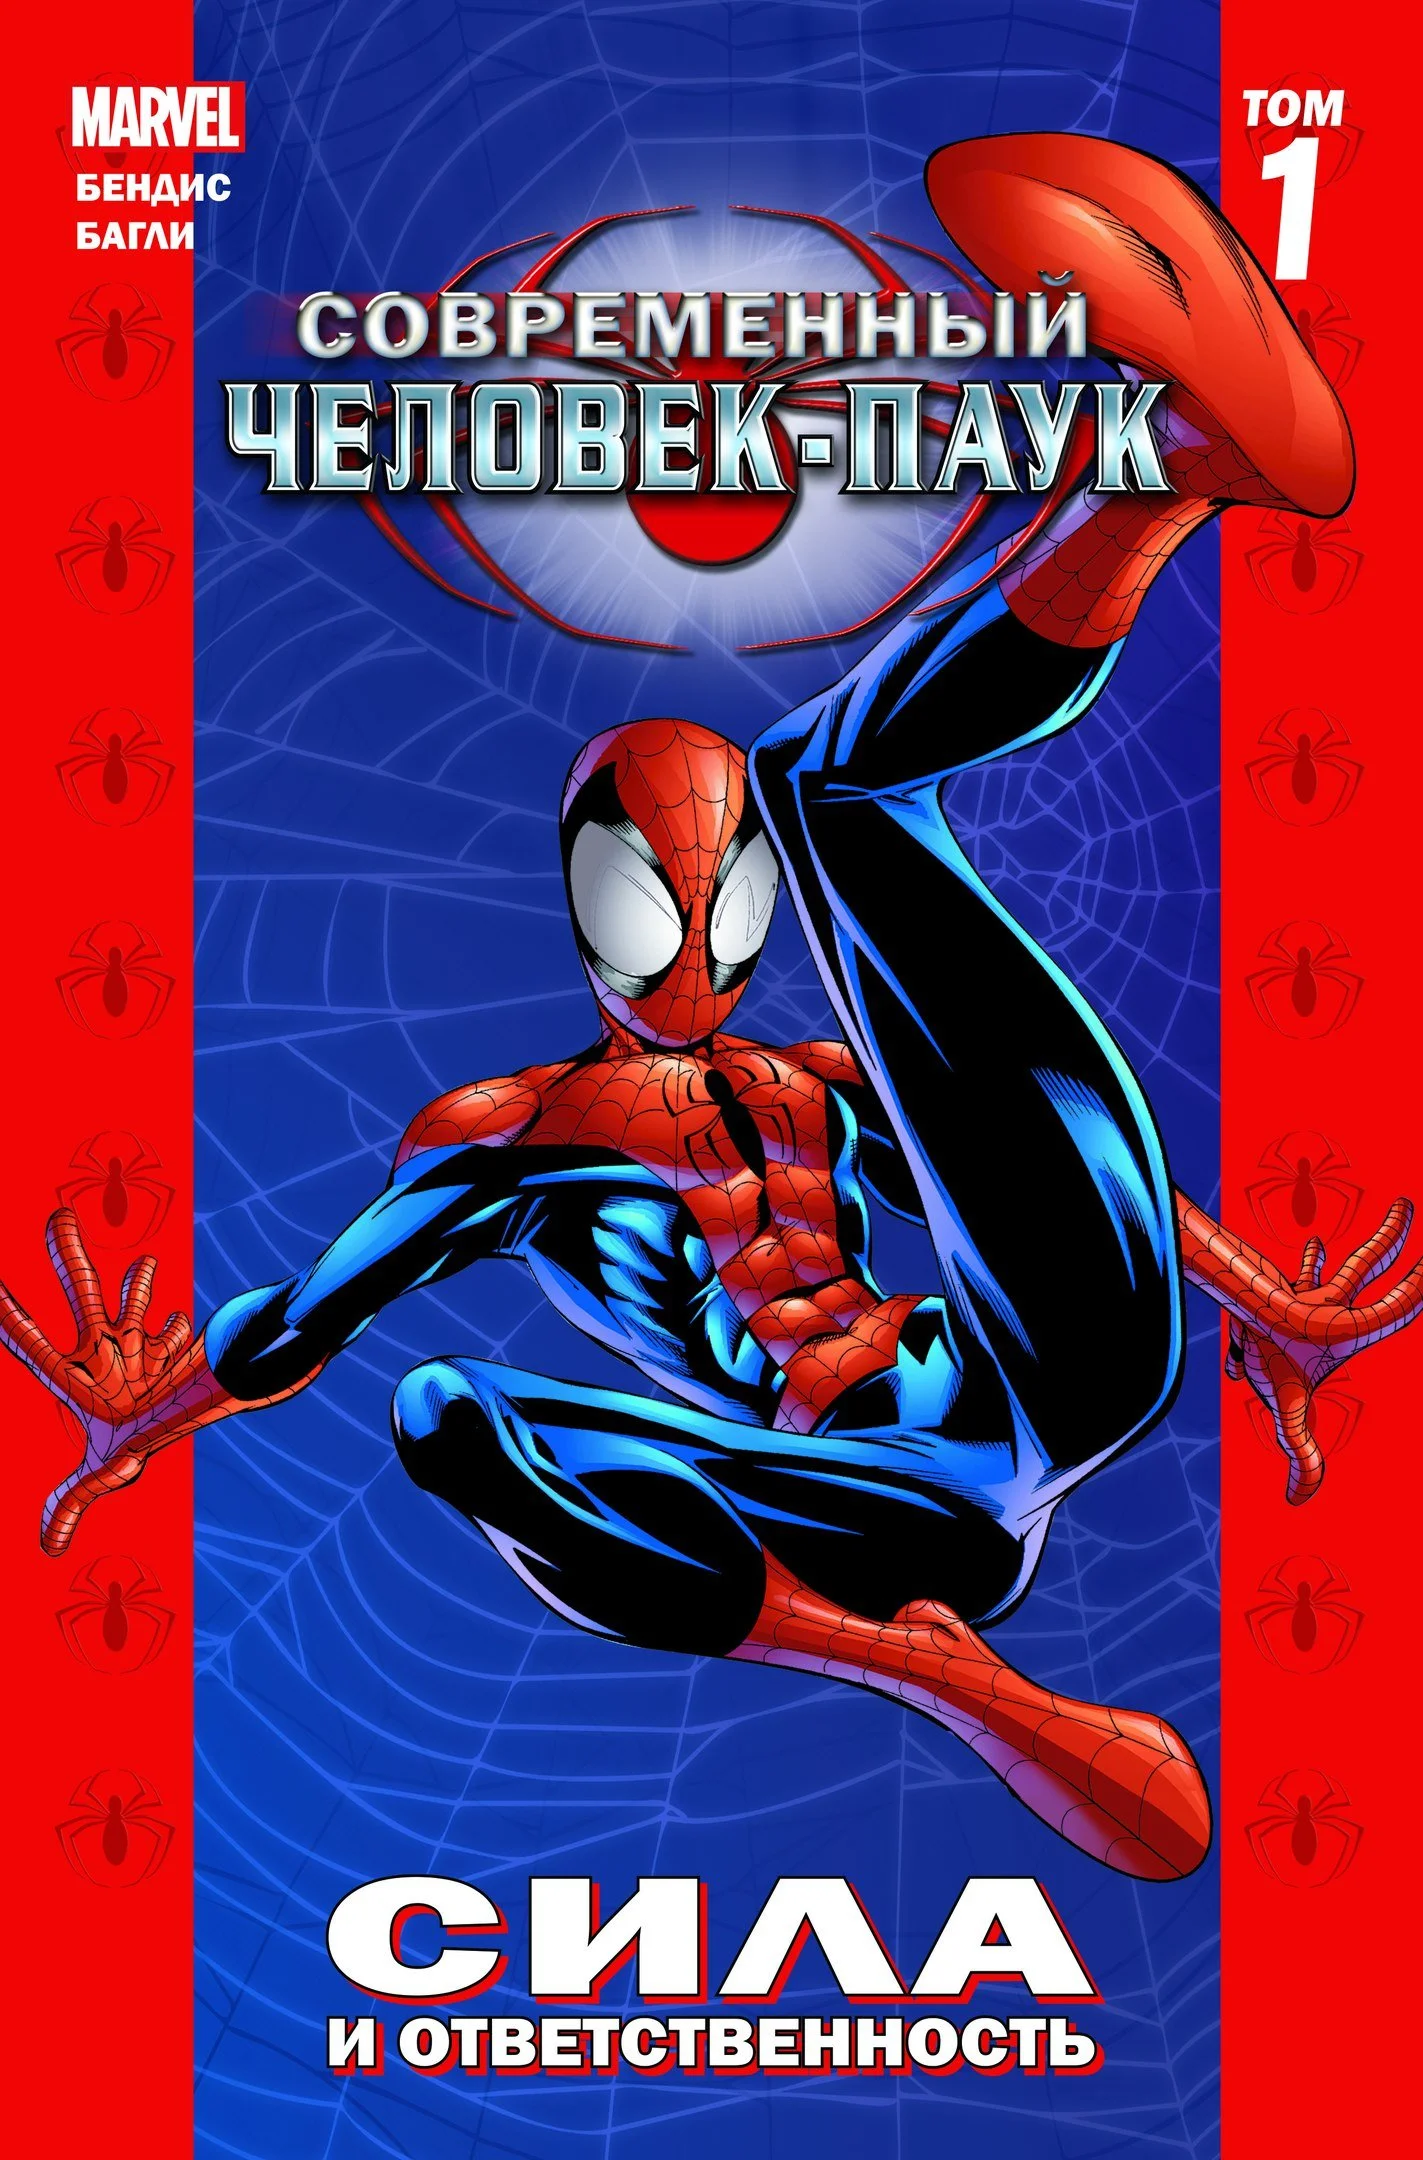 Одна из лучших историй про Человека-паука возвращается в Россию! - фото 1